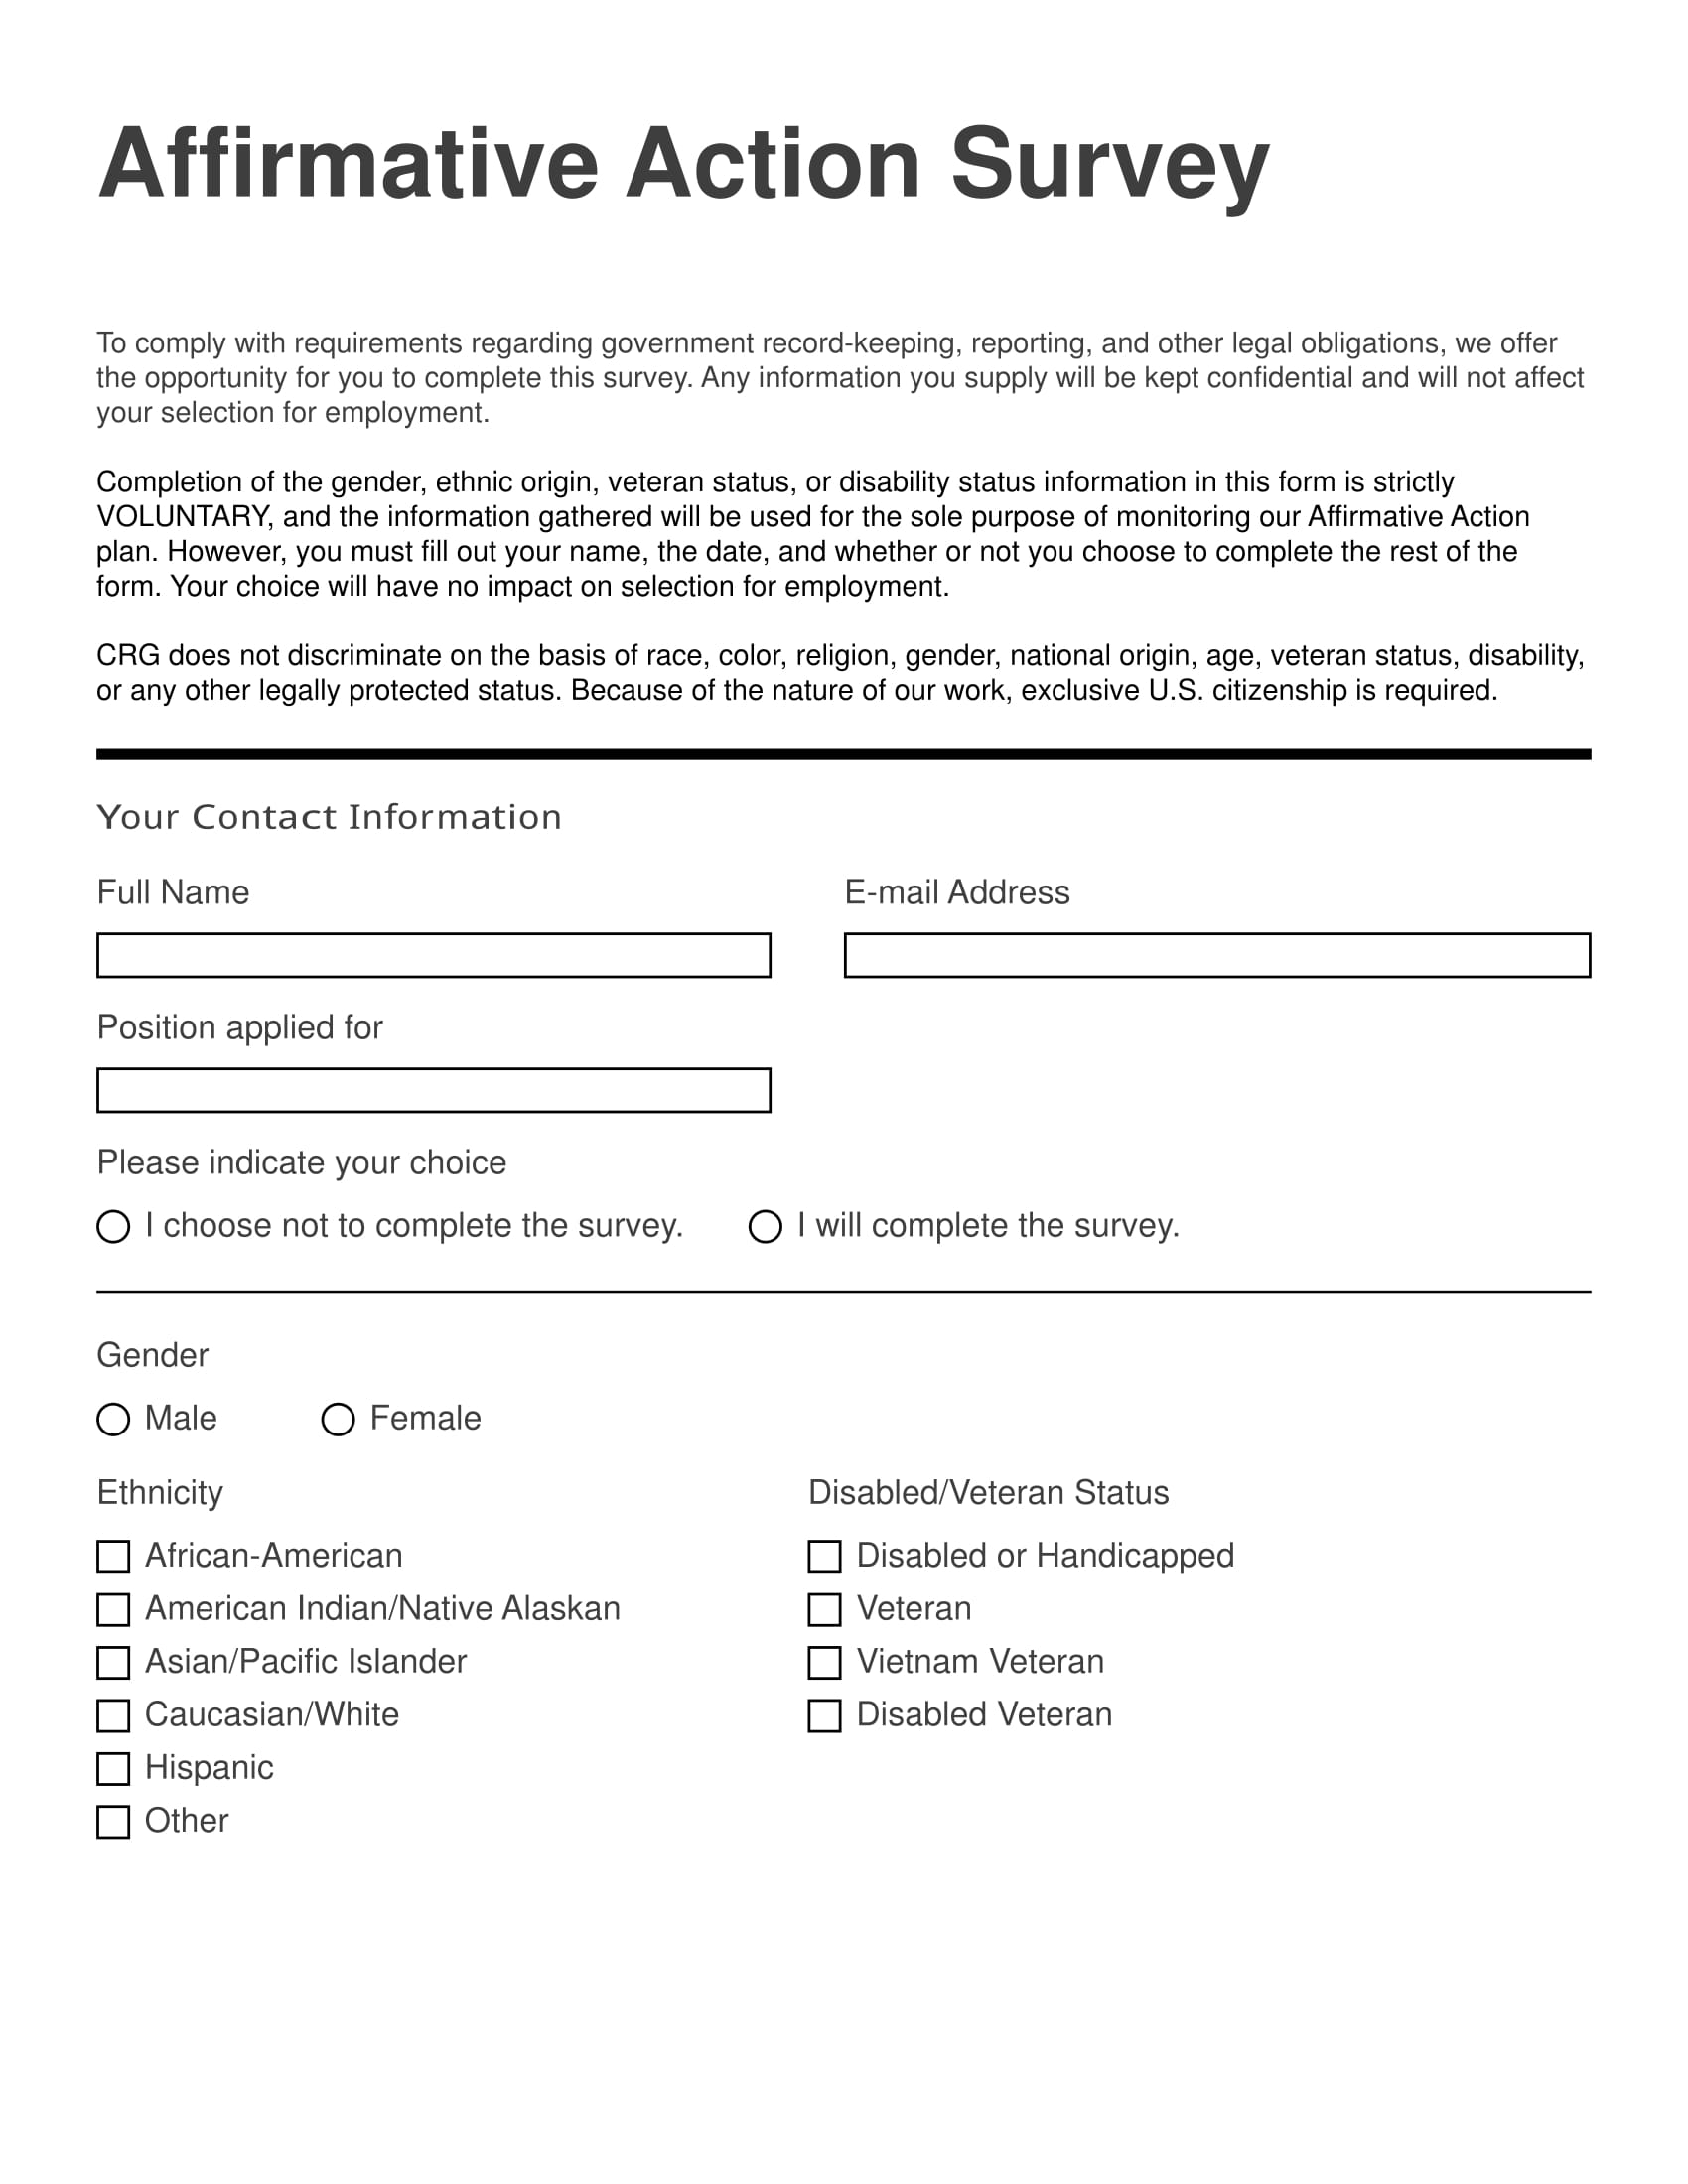 affirmative action survey form 1